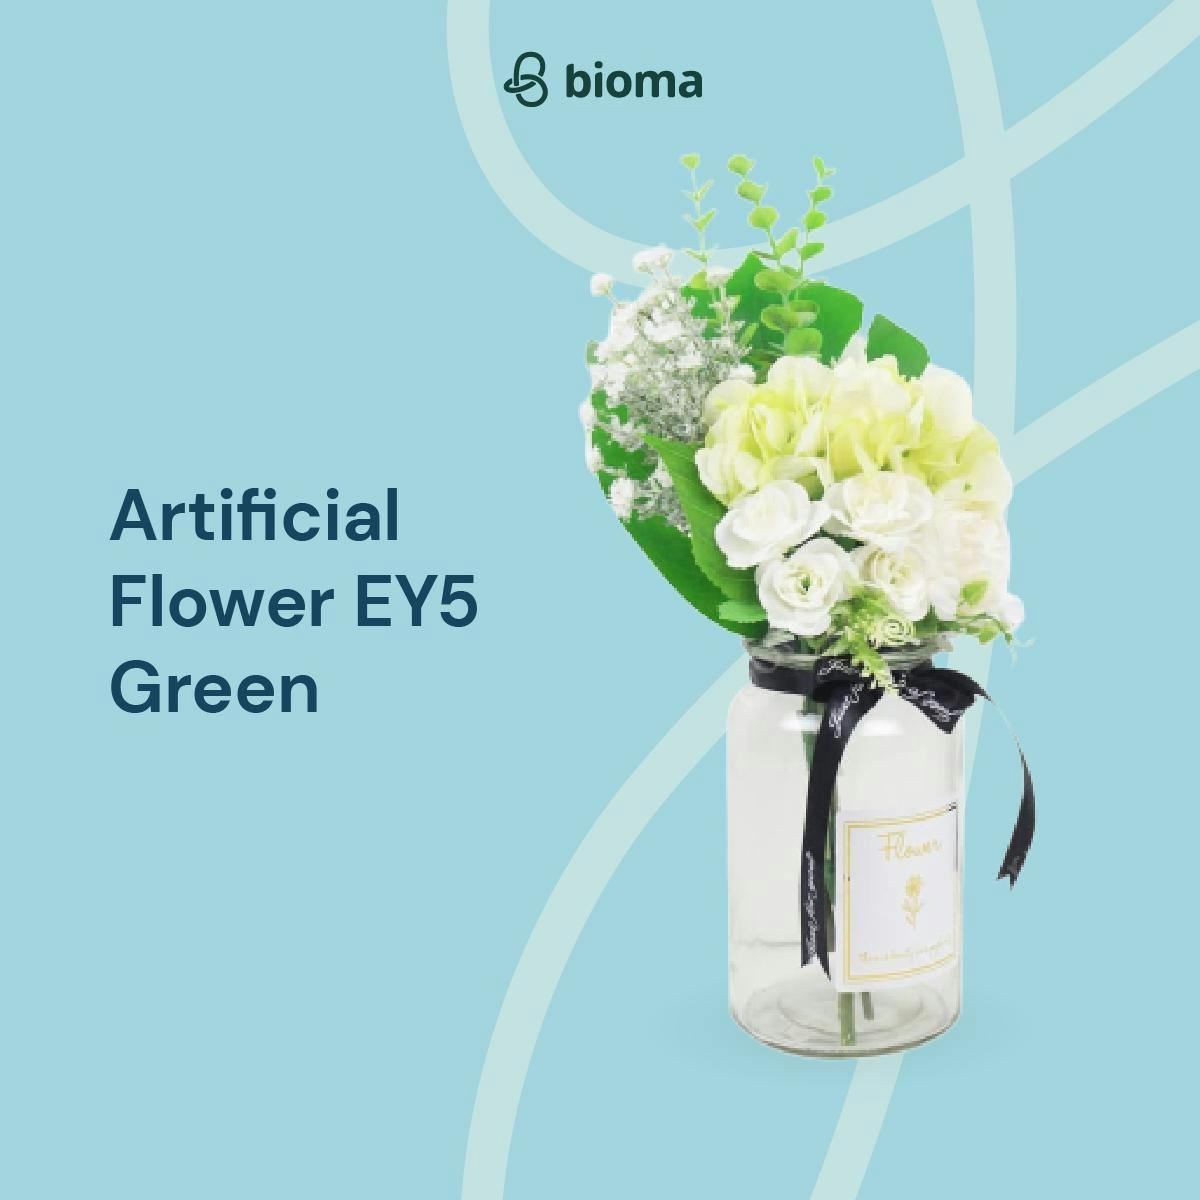 Artificial Flower EY5 Green